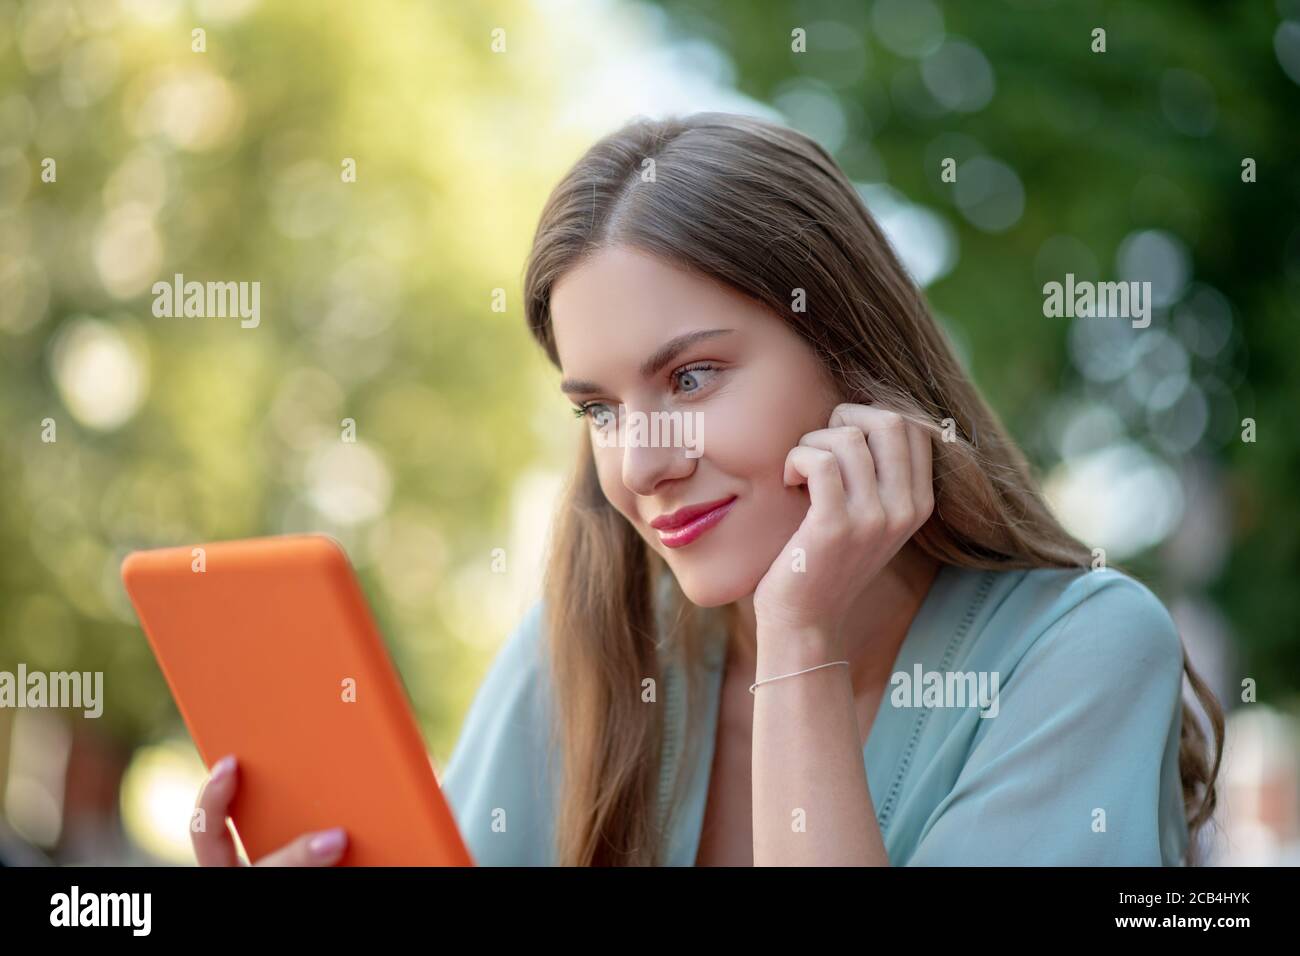 Femme romantique tenant une tablette orange, posant son menton sur sa main Banque D'Images